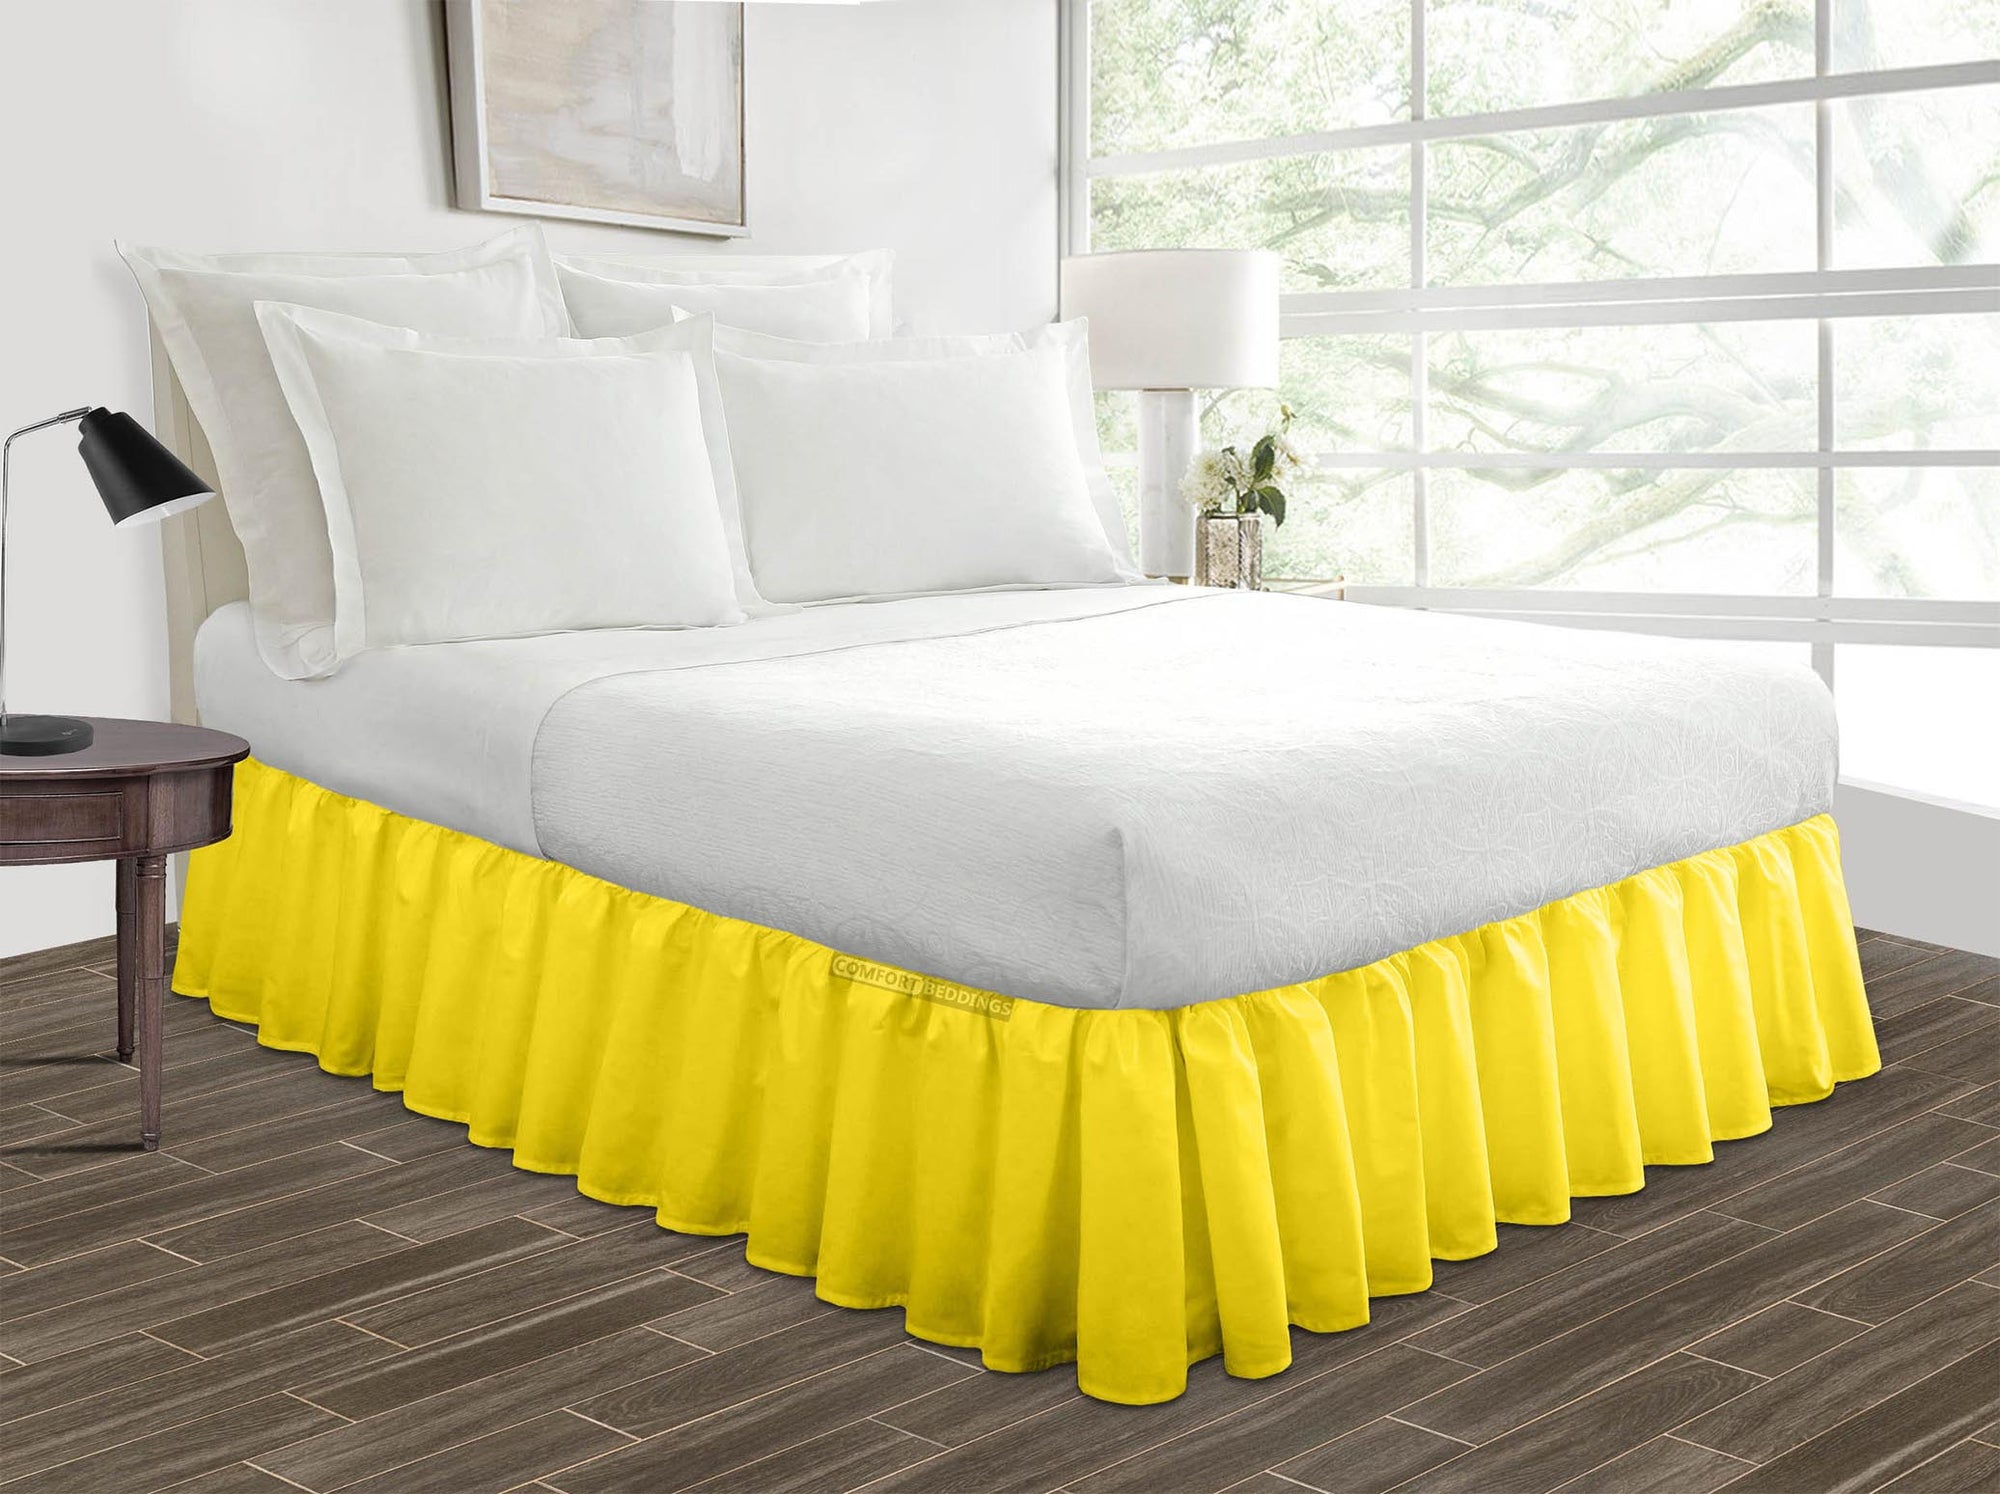 Luxury Yellow ruffle bed skirt